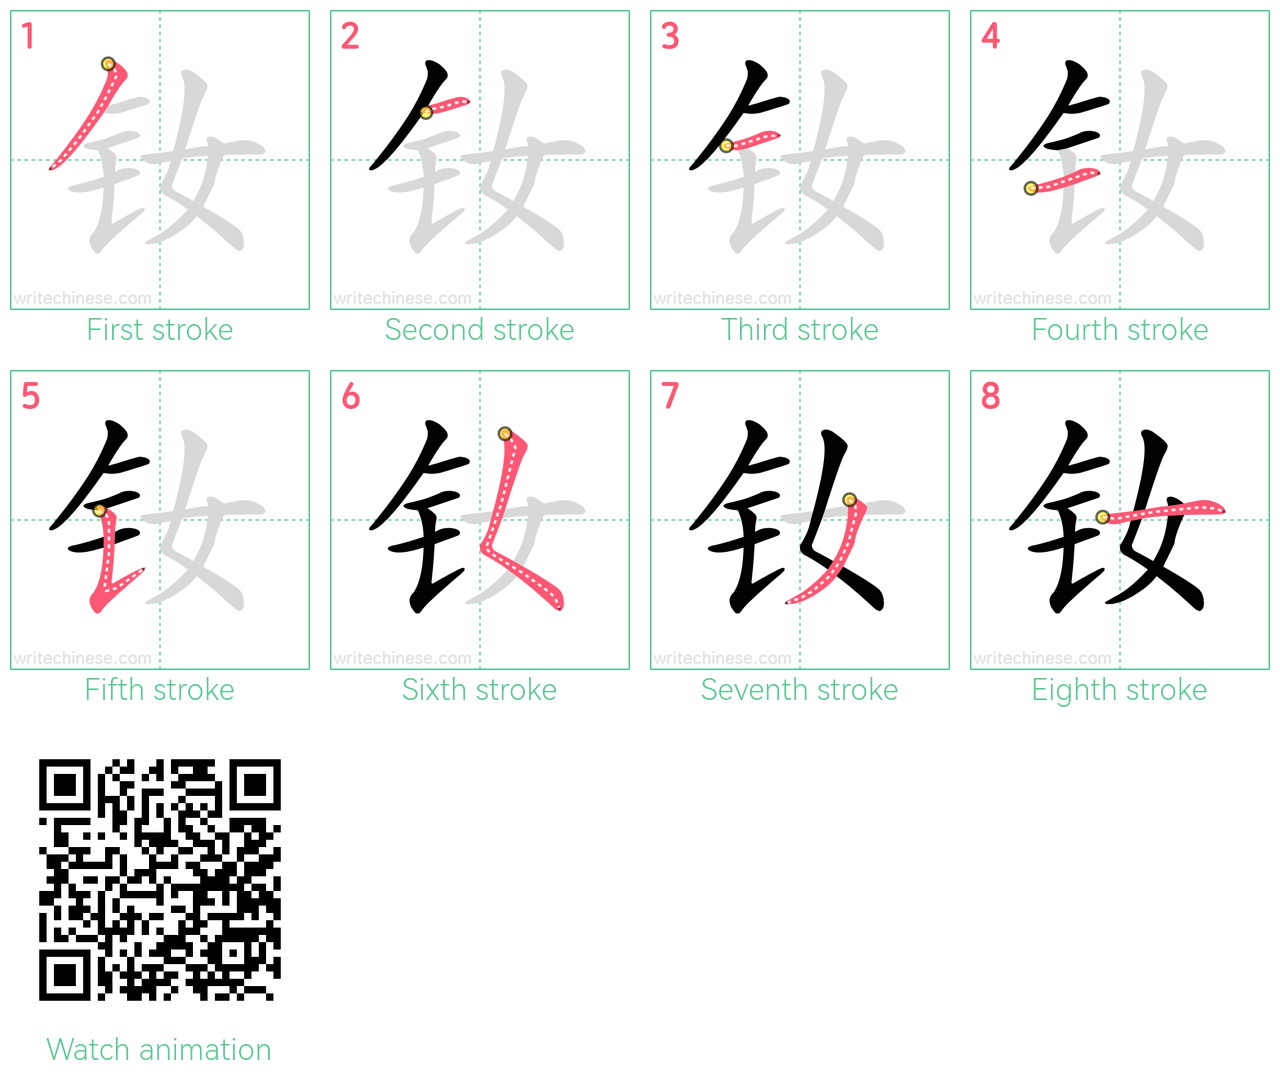 钕 step-by-step stroke order diagrams